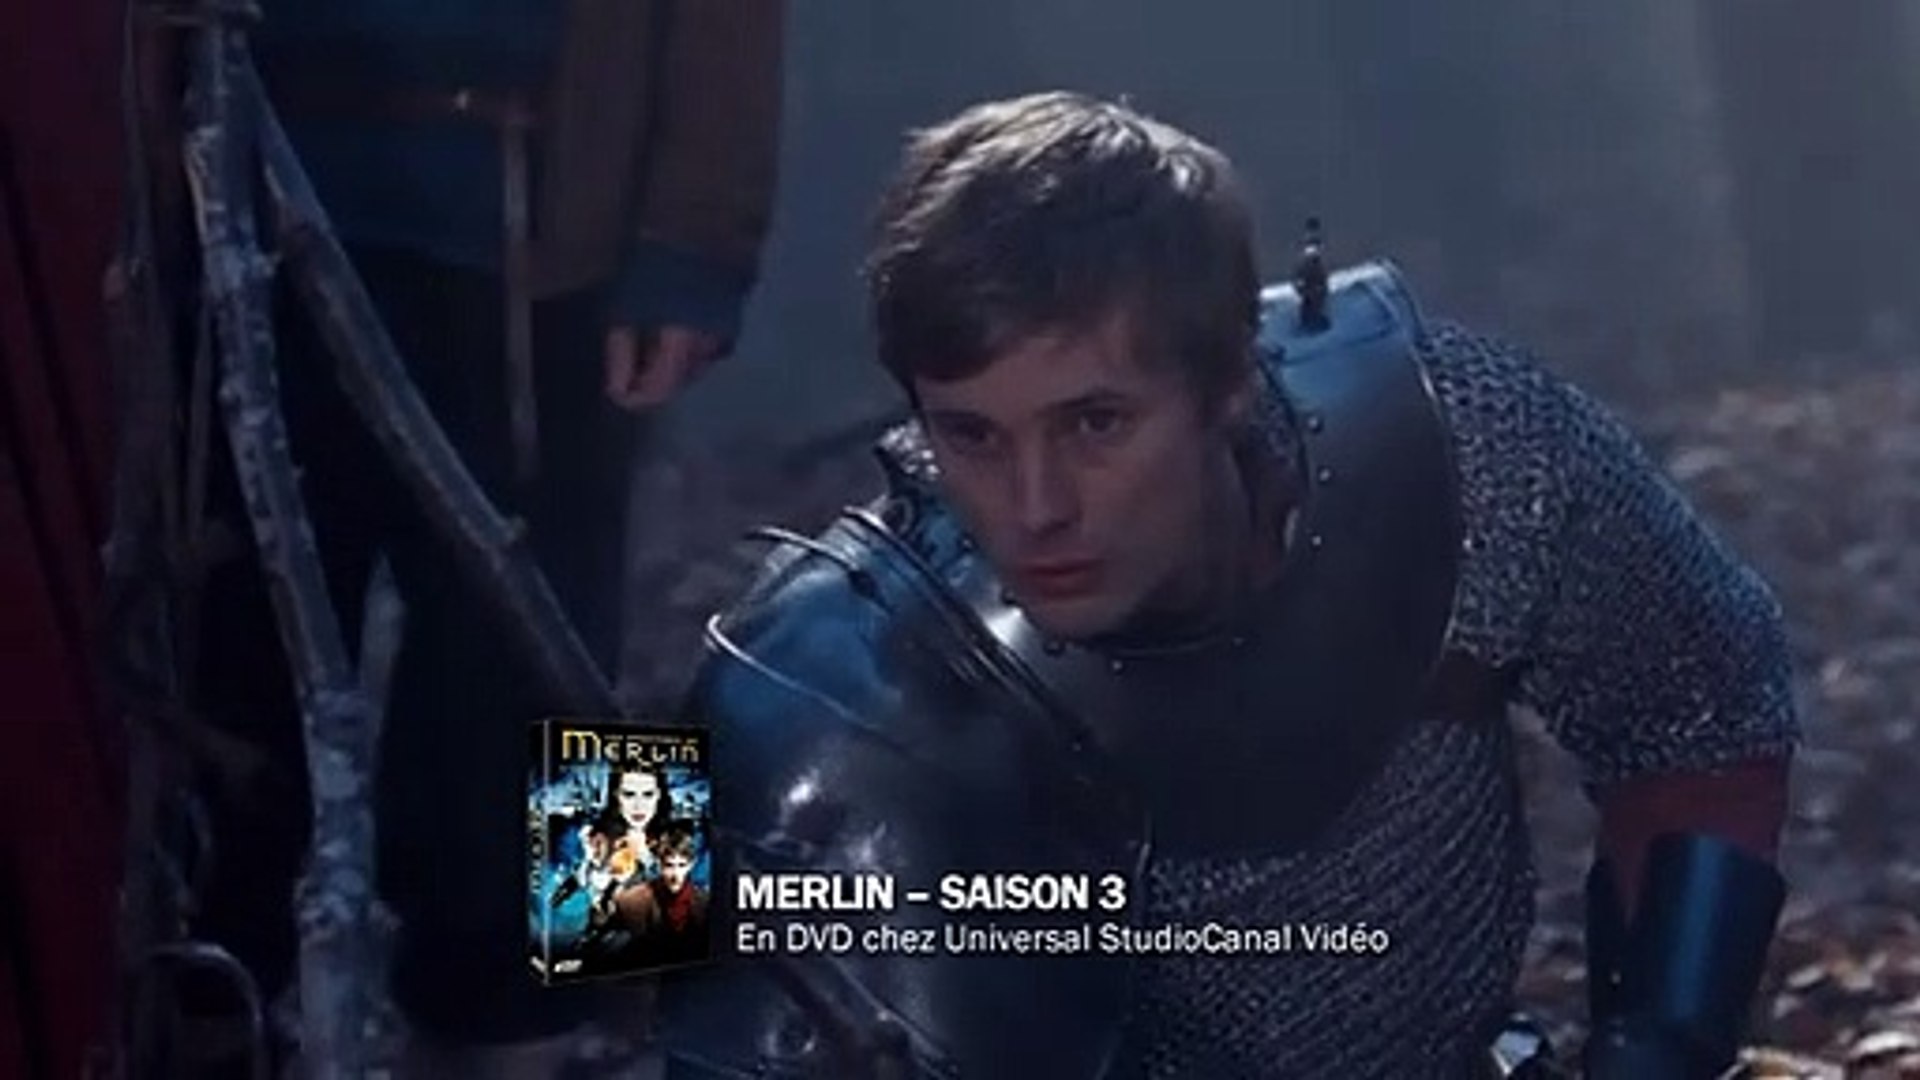 Merlin - saison 3 - épisode 1 Extrait vidéo VF - Vidéo Dailymotion